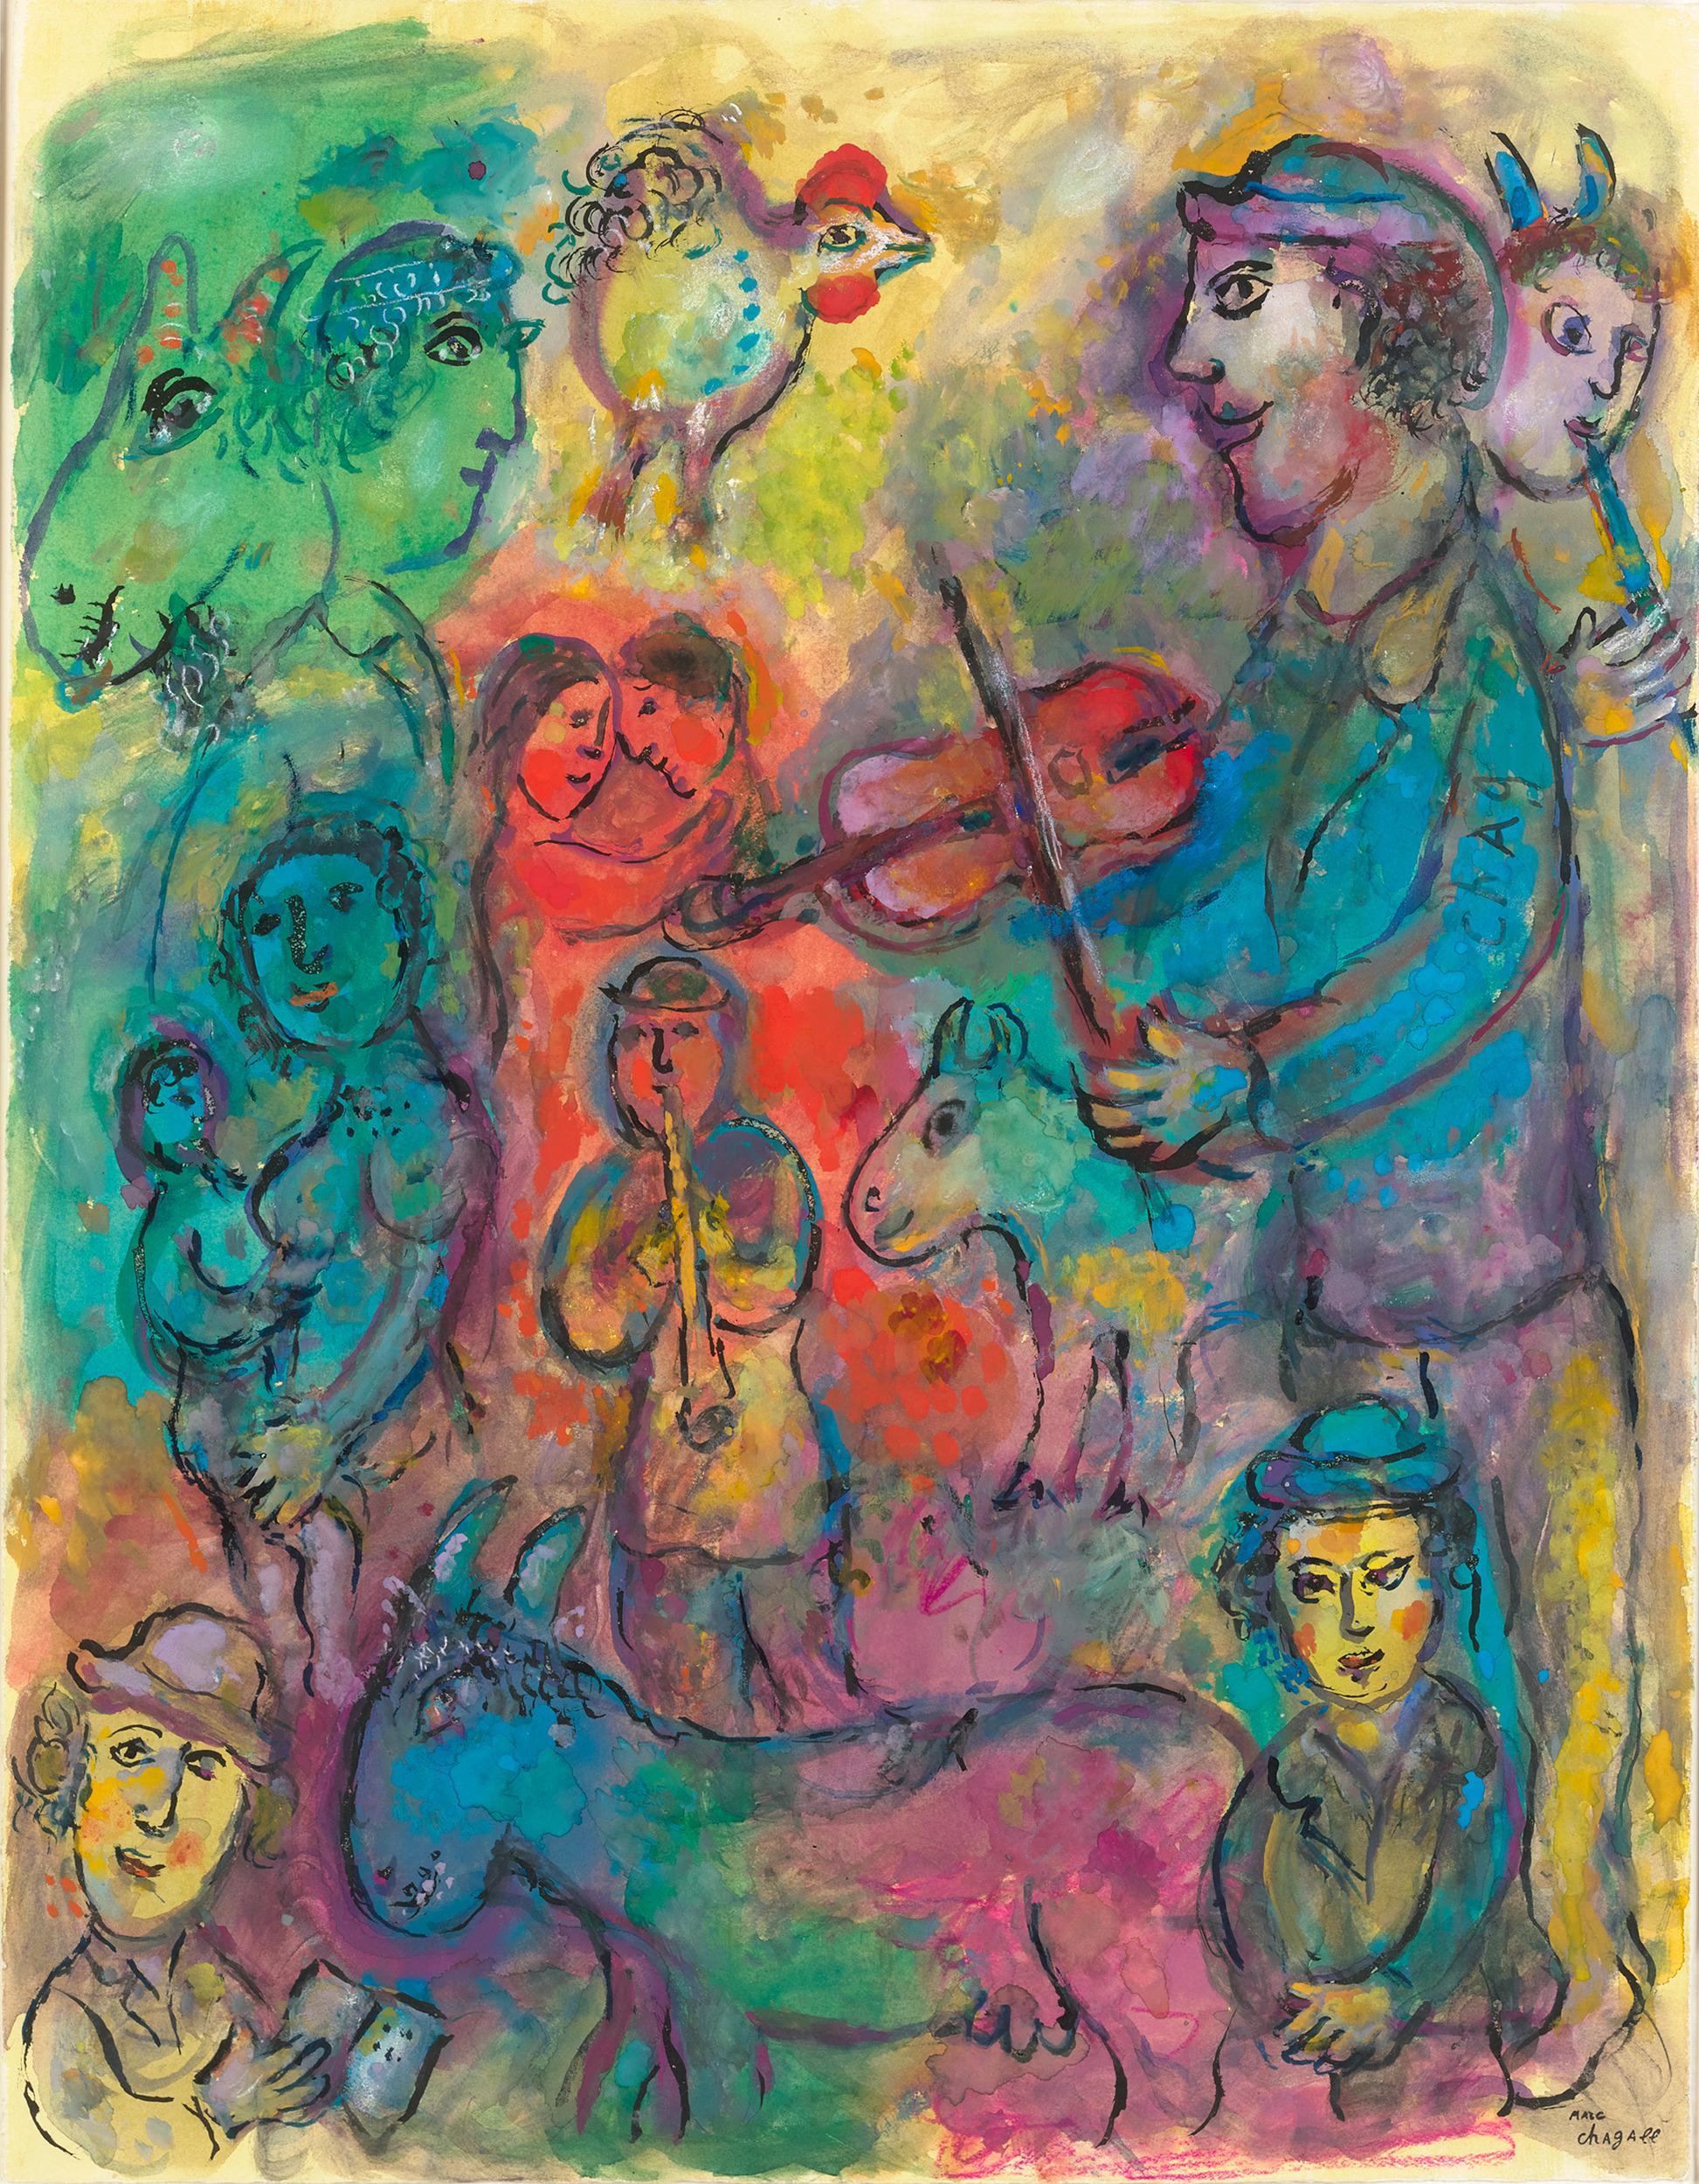 Marc Chagall
1887-1985  Russisch

Musikanten im Mehrfarbentopf
(Musiker auf einem mehrfarbigen Hintergrund)

Signiert "Chag" (auf dem Ärmel der rechten Figur); gestempelt mit der Signatur "Marc Chagall" (unten rechts)
Tempera, Gouache, farbige